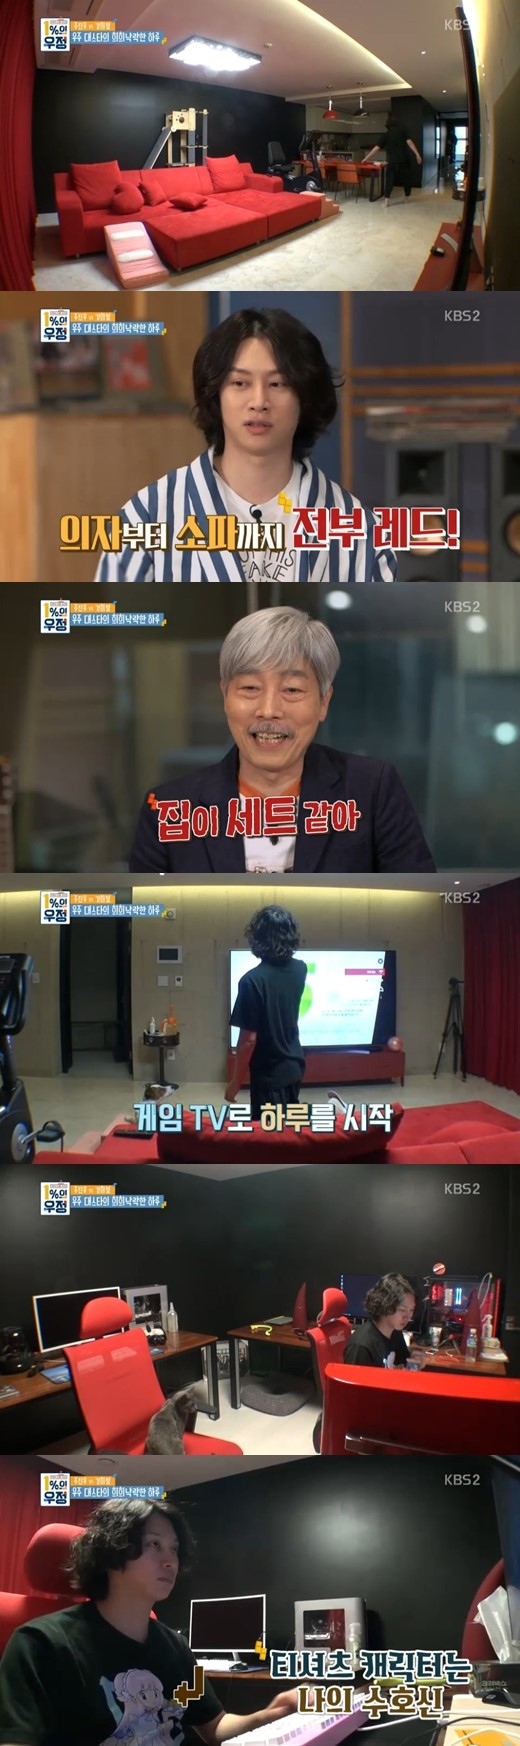 Super Junior ヒチョル まるでセットのような自宅を公開 家具のほとんどが 赤色 Kstyle